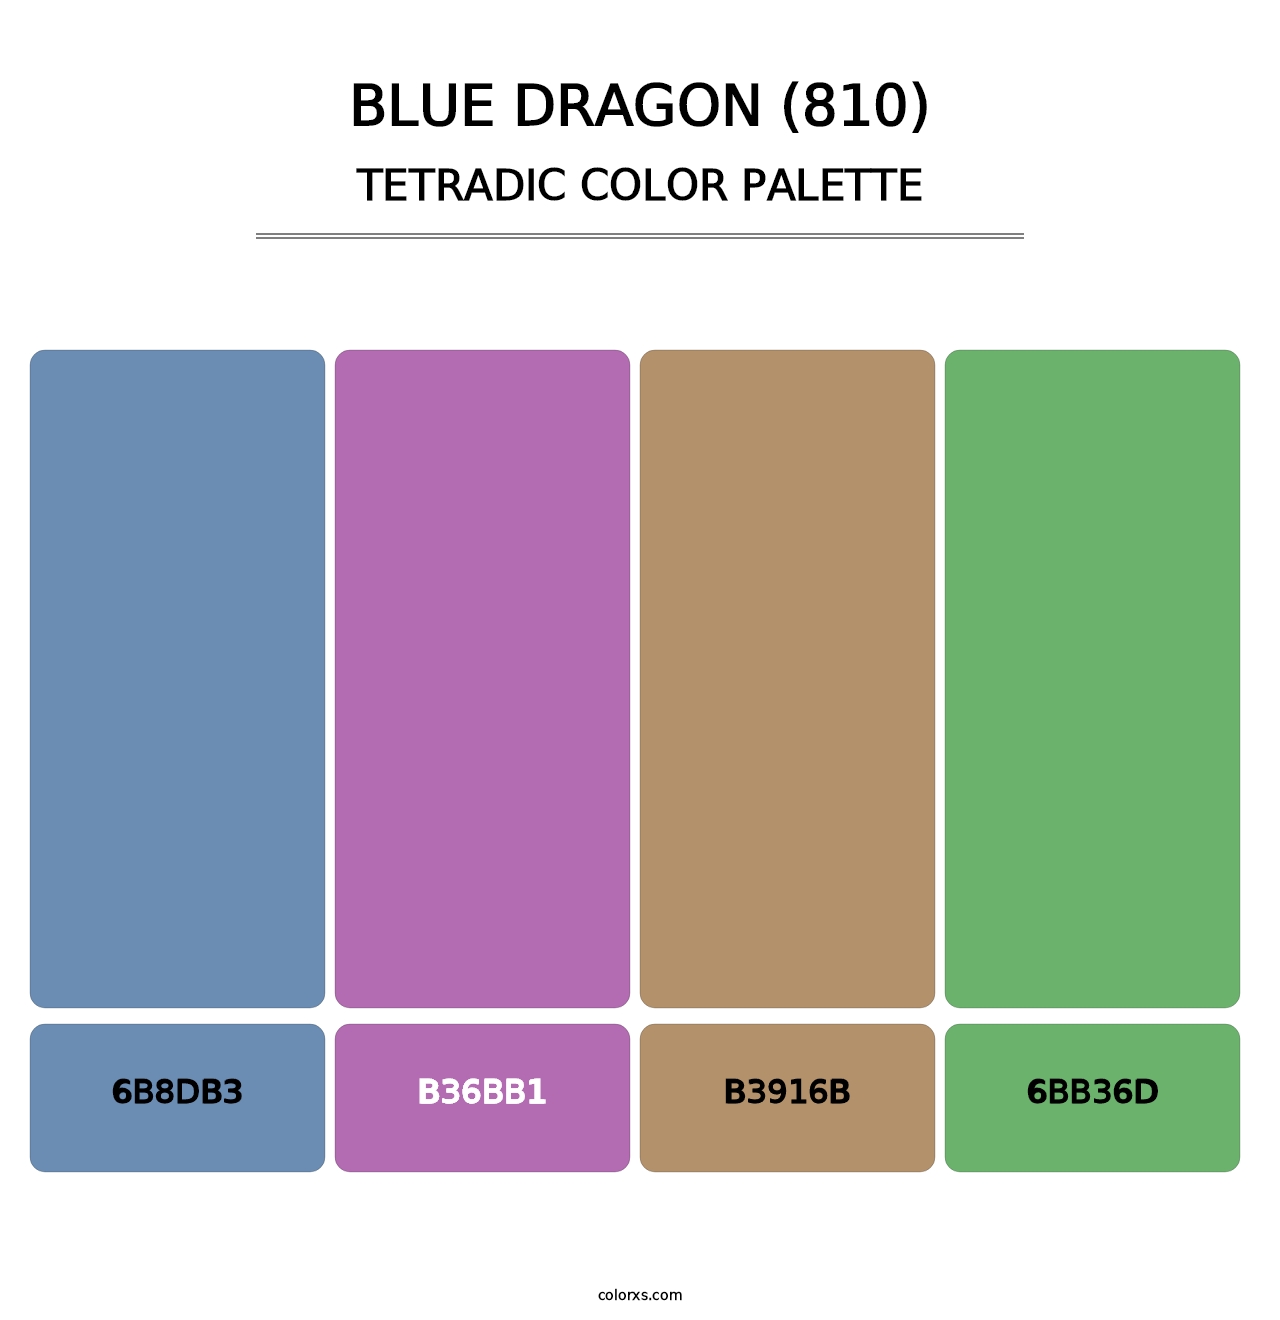 Blue Dragon (810) - Tetradic Color Palette